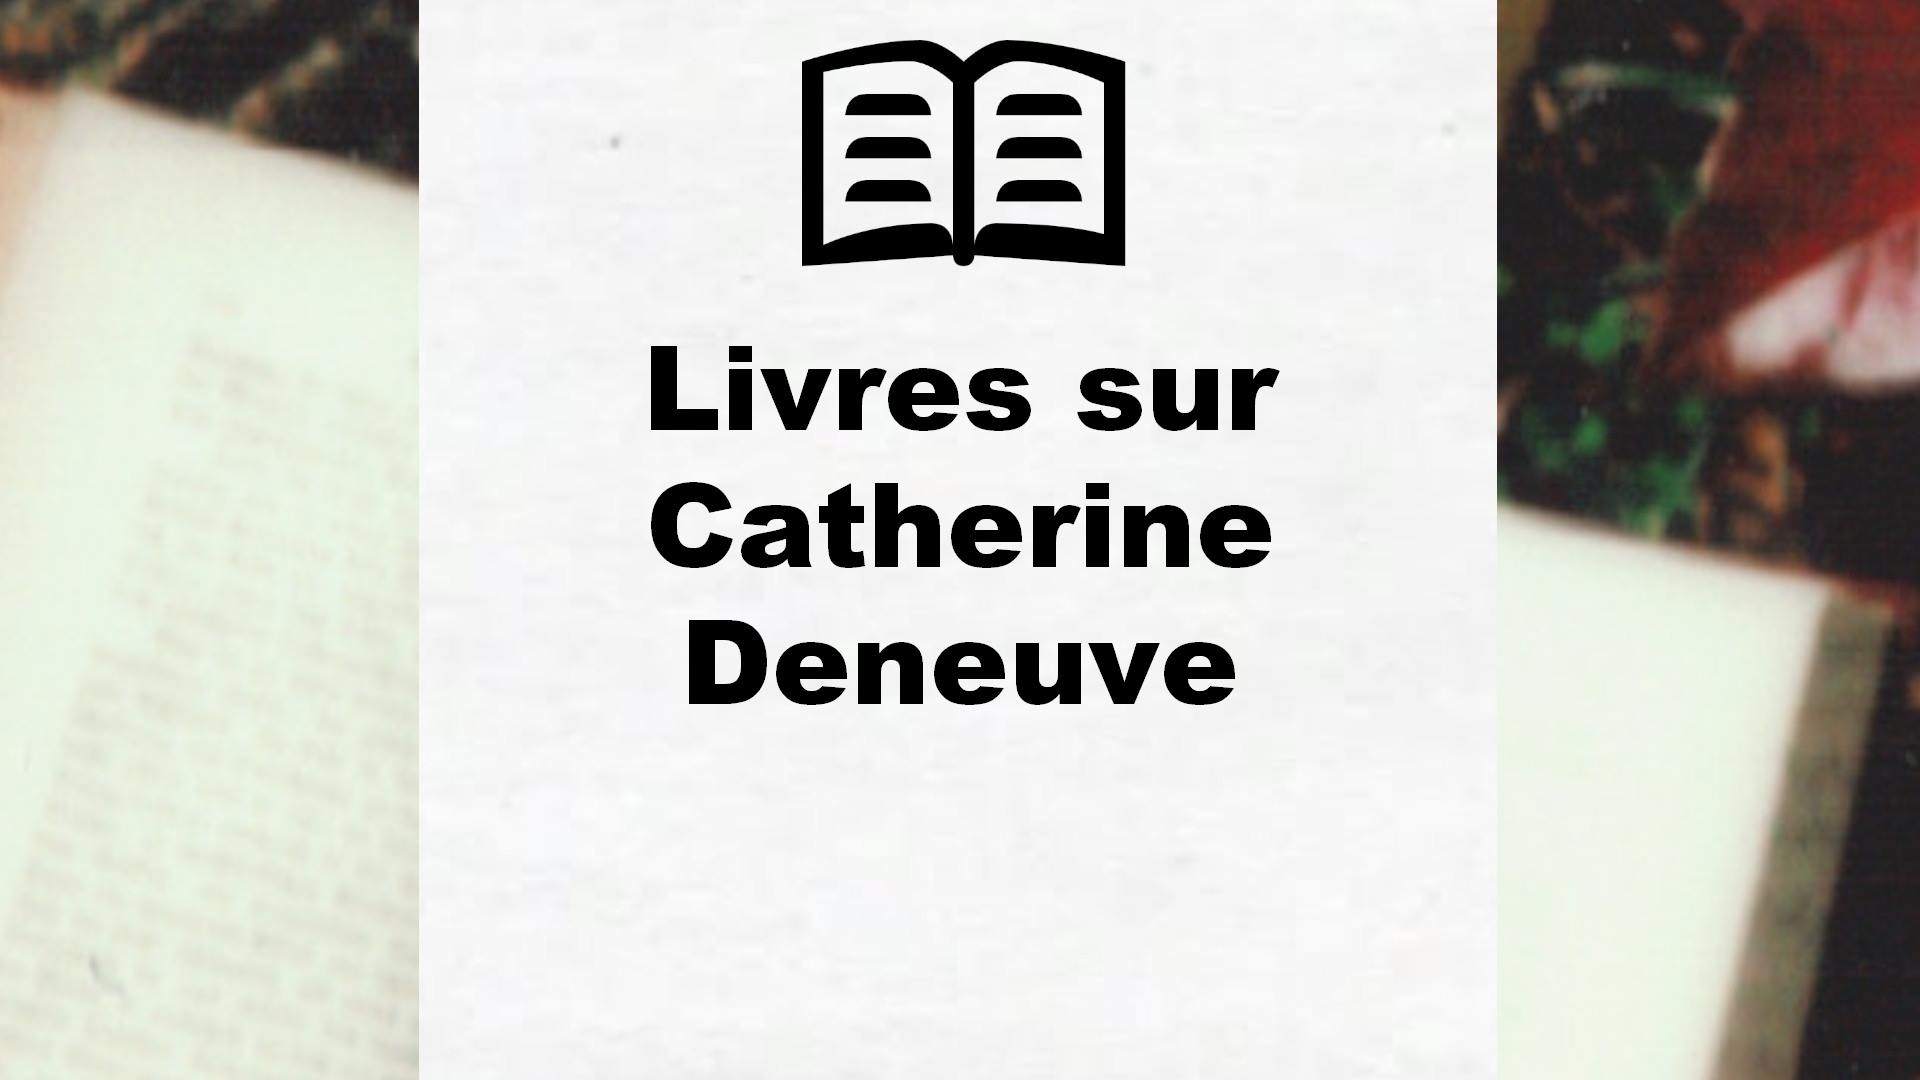 Livres sur Catherine Deneuve